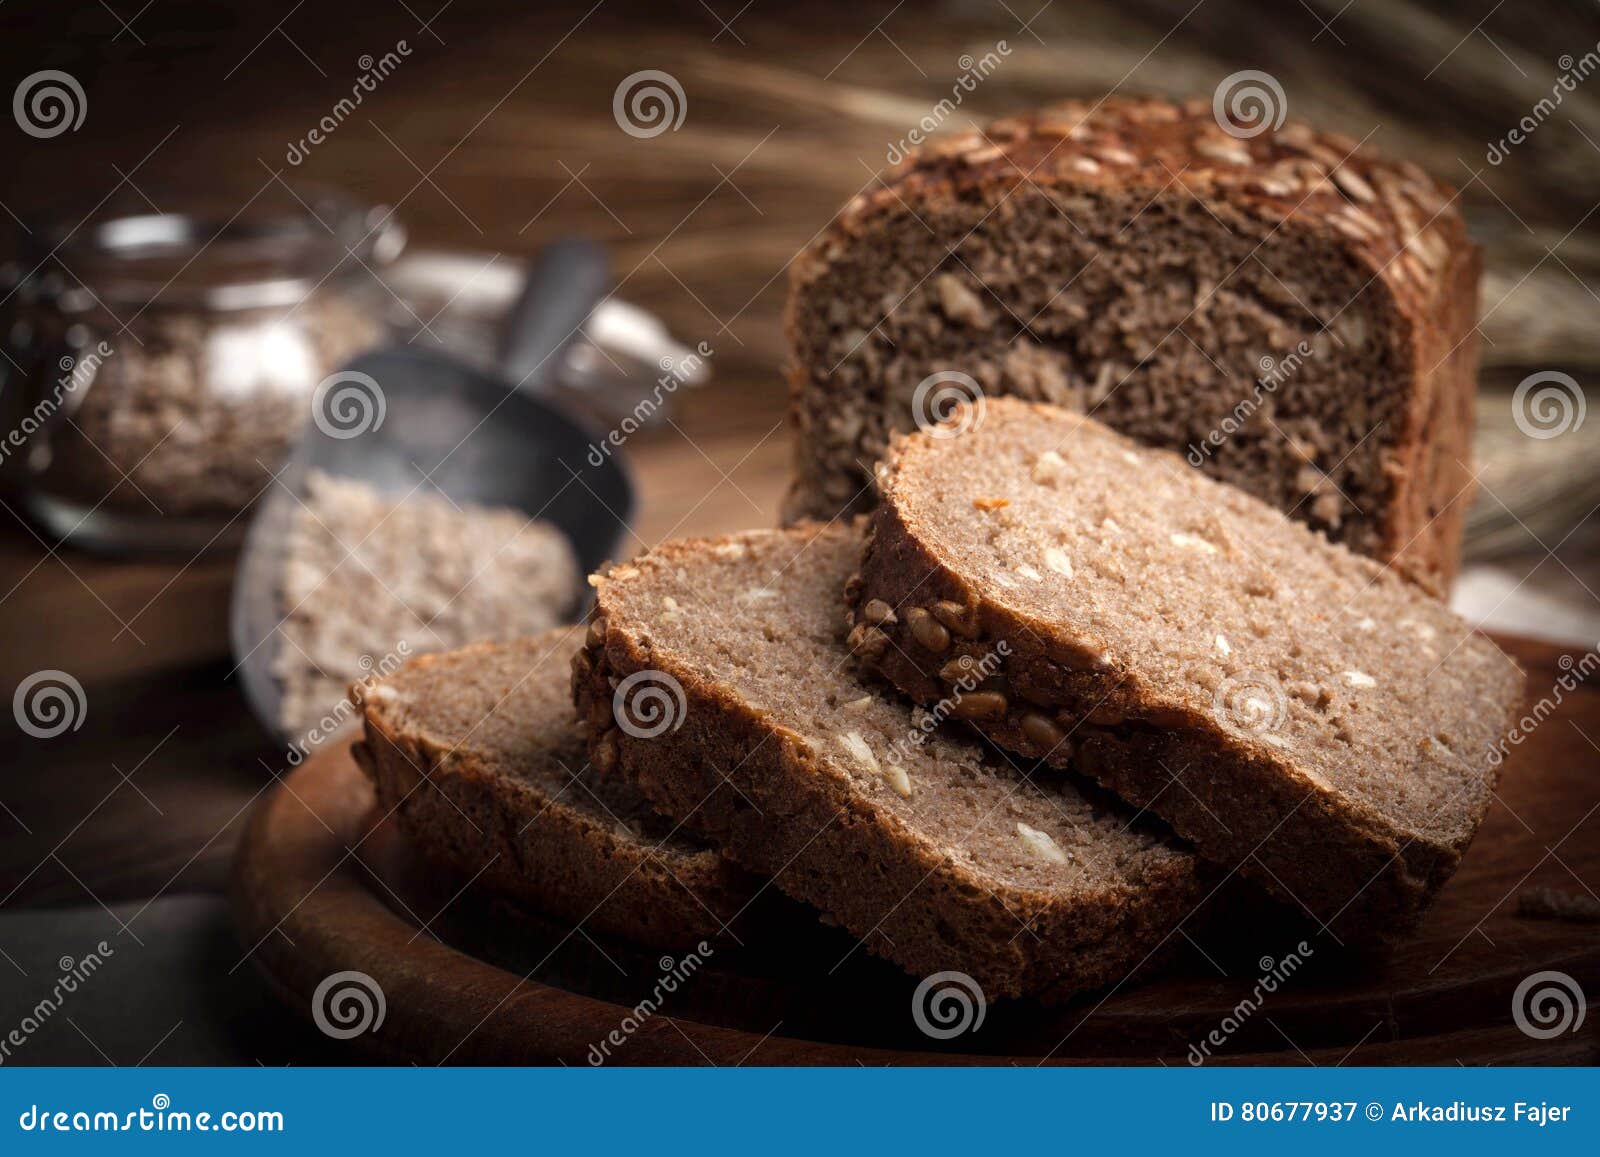 Черный хлеб сахар. Хлеб с семечками. Хлеб с семенами подсолнечника. Черный хлеб с семечками. Цельнозерновой хлеб.